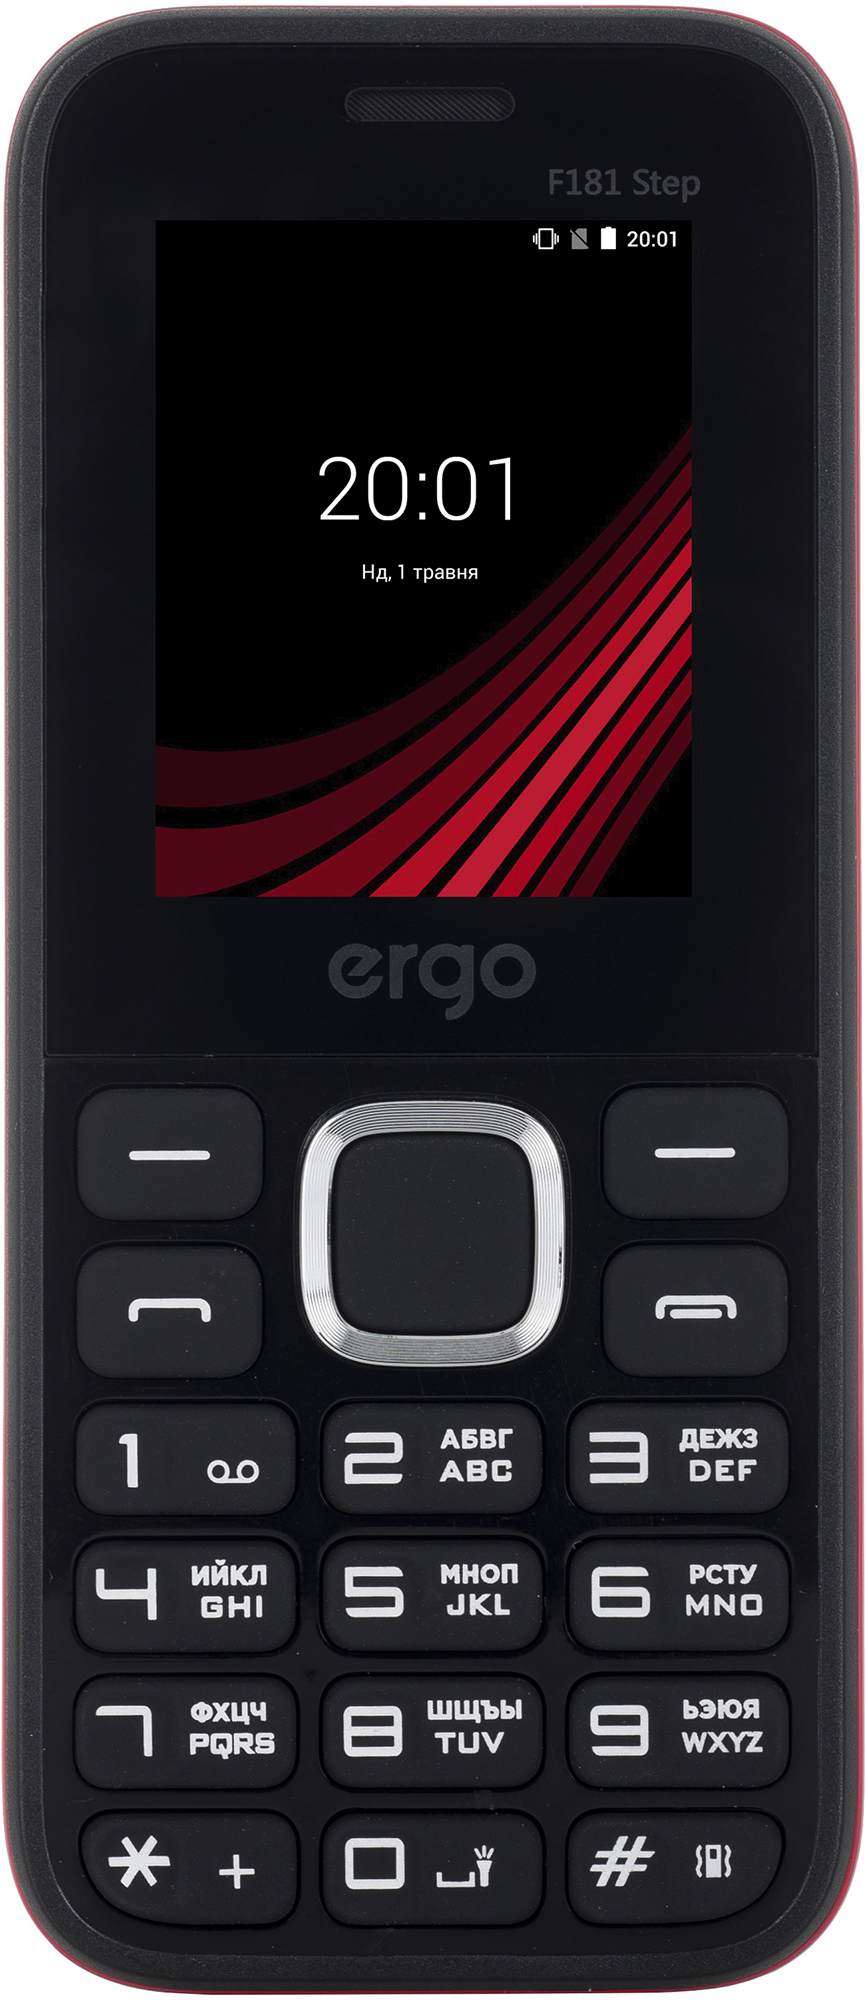 Мобильный телефон ERGO F181 Step DS Black в Киеве